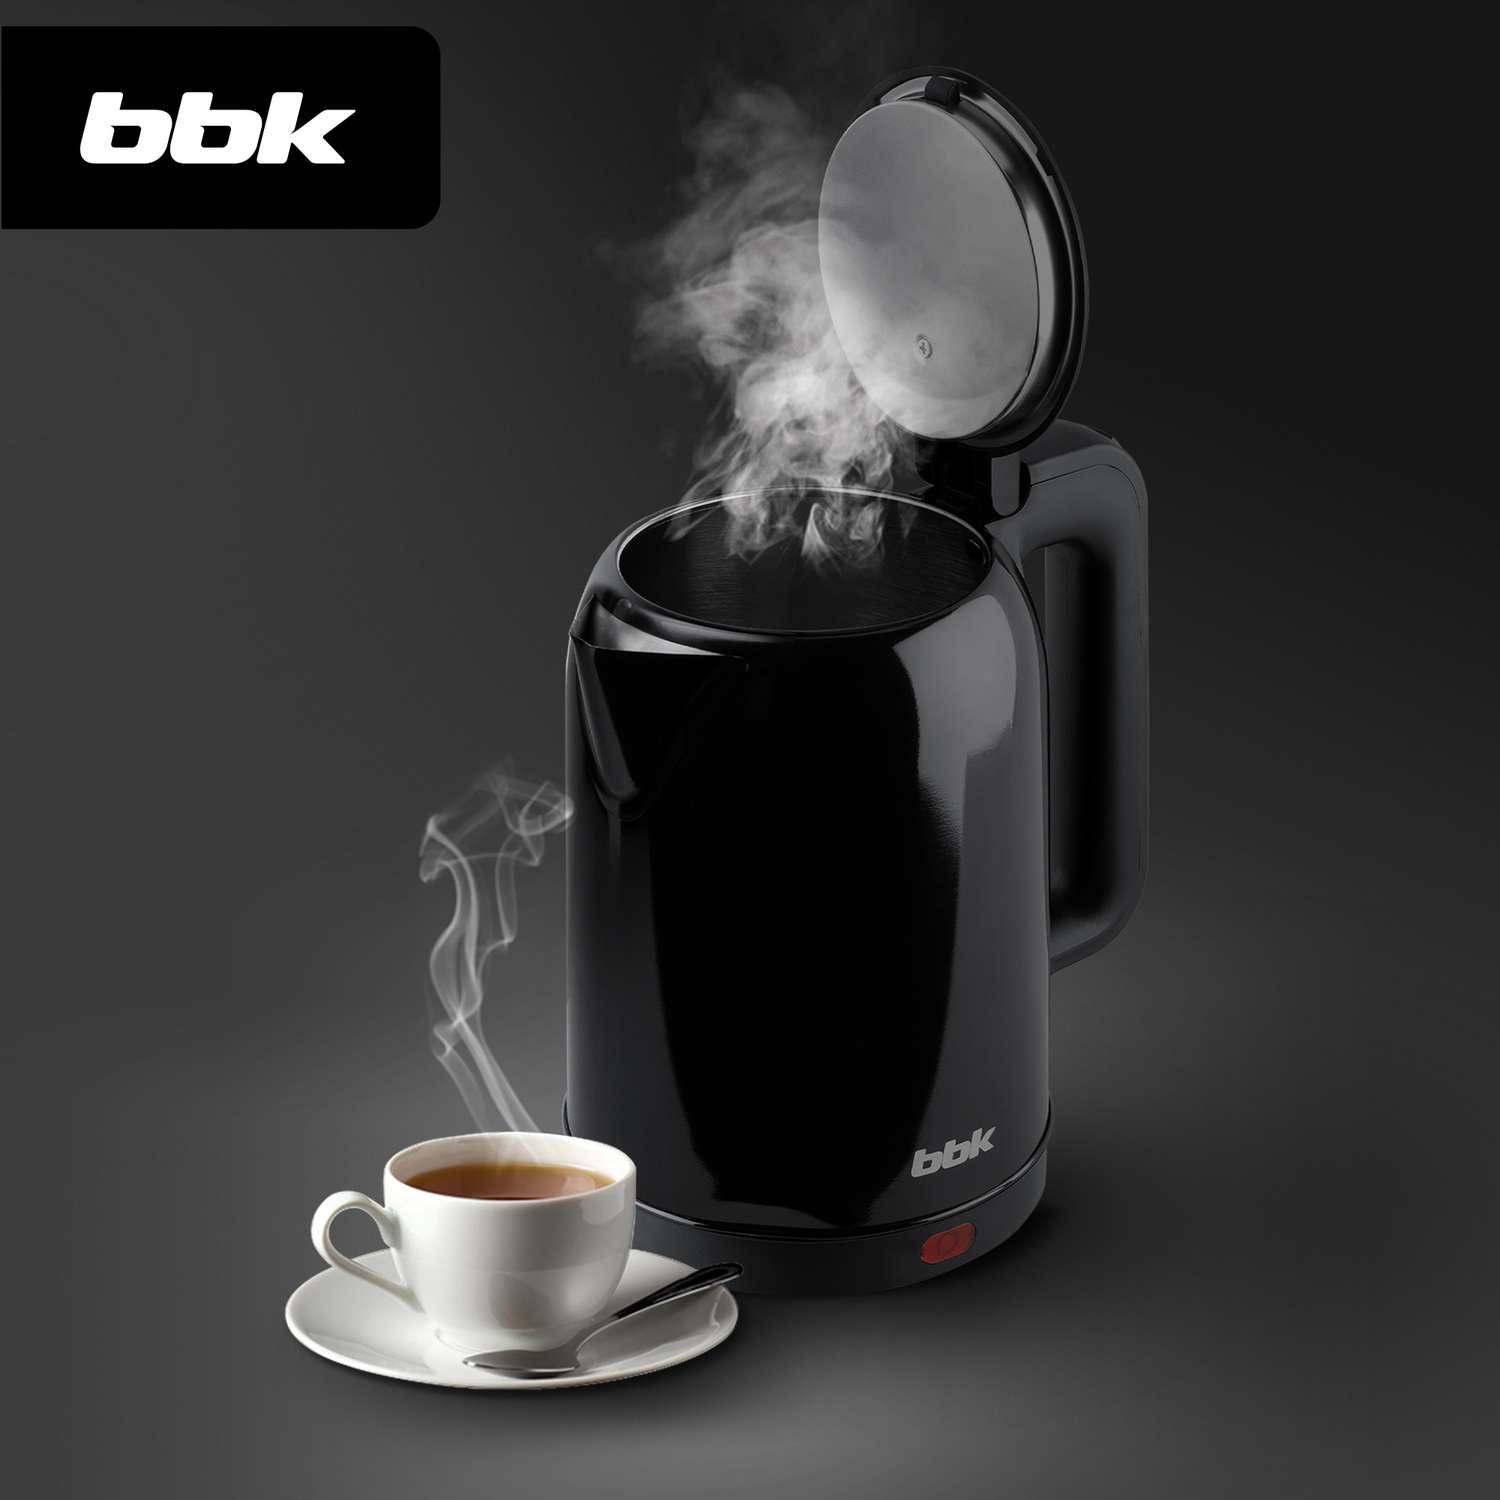 Чайник электрический BBK EK1809S черный объем 1.8 л мощность 1800-2000 Вт - фото 4